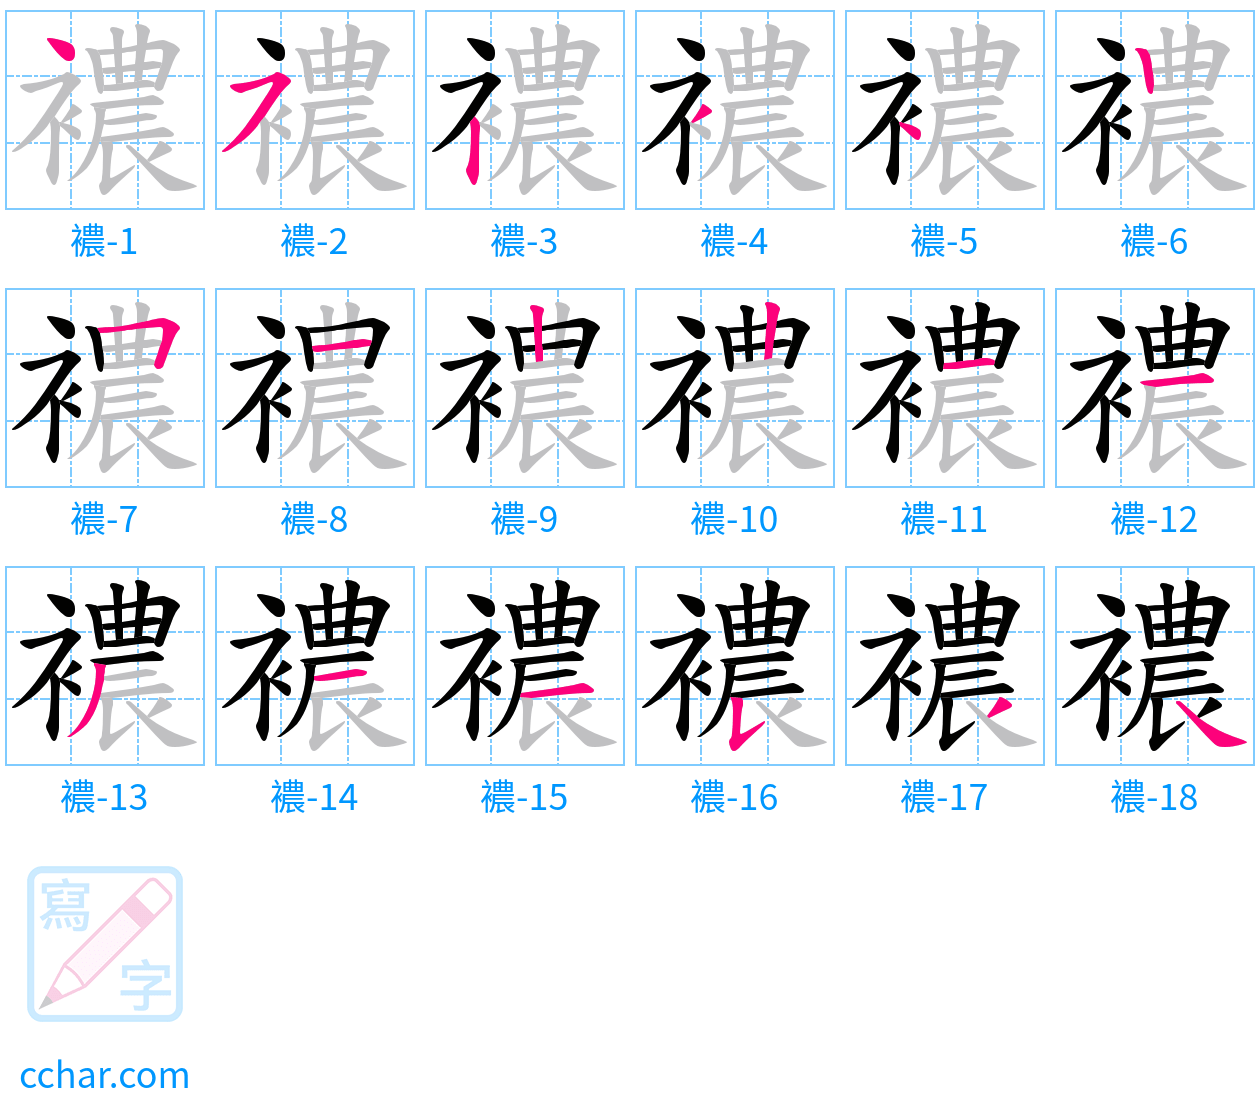 襛 stroke order step-by-step diagram